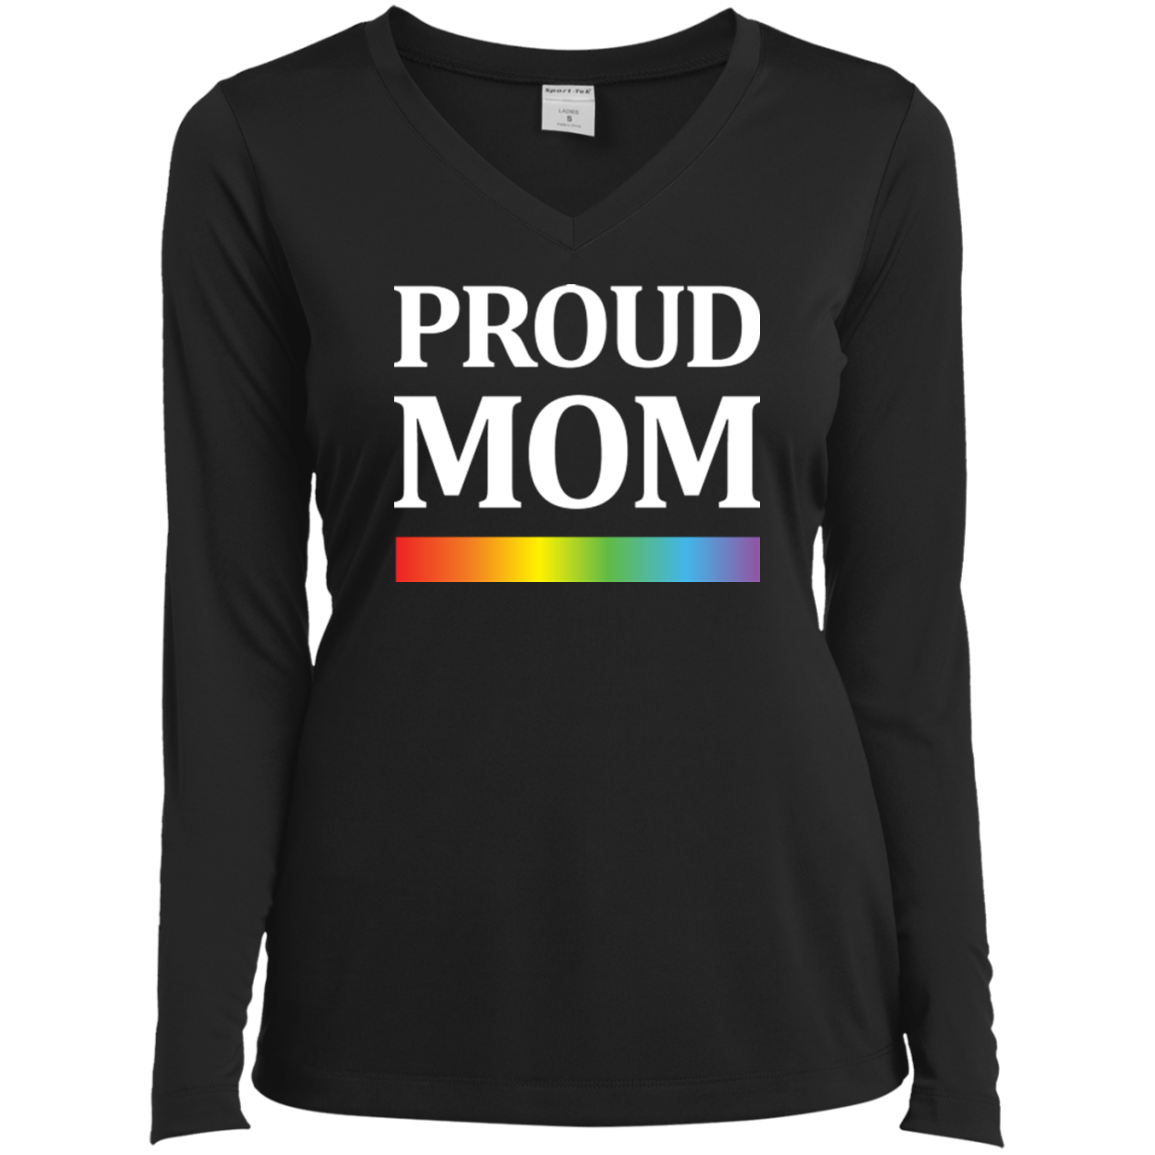 LGBT Pride "Proud Mom" Full Sleeves V-neck tshirt for women